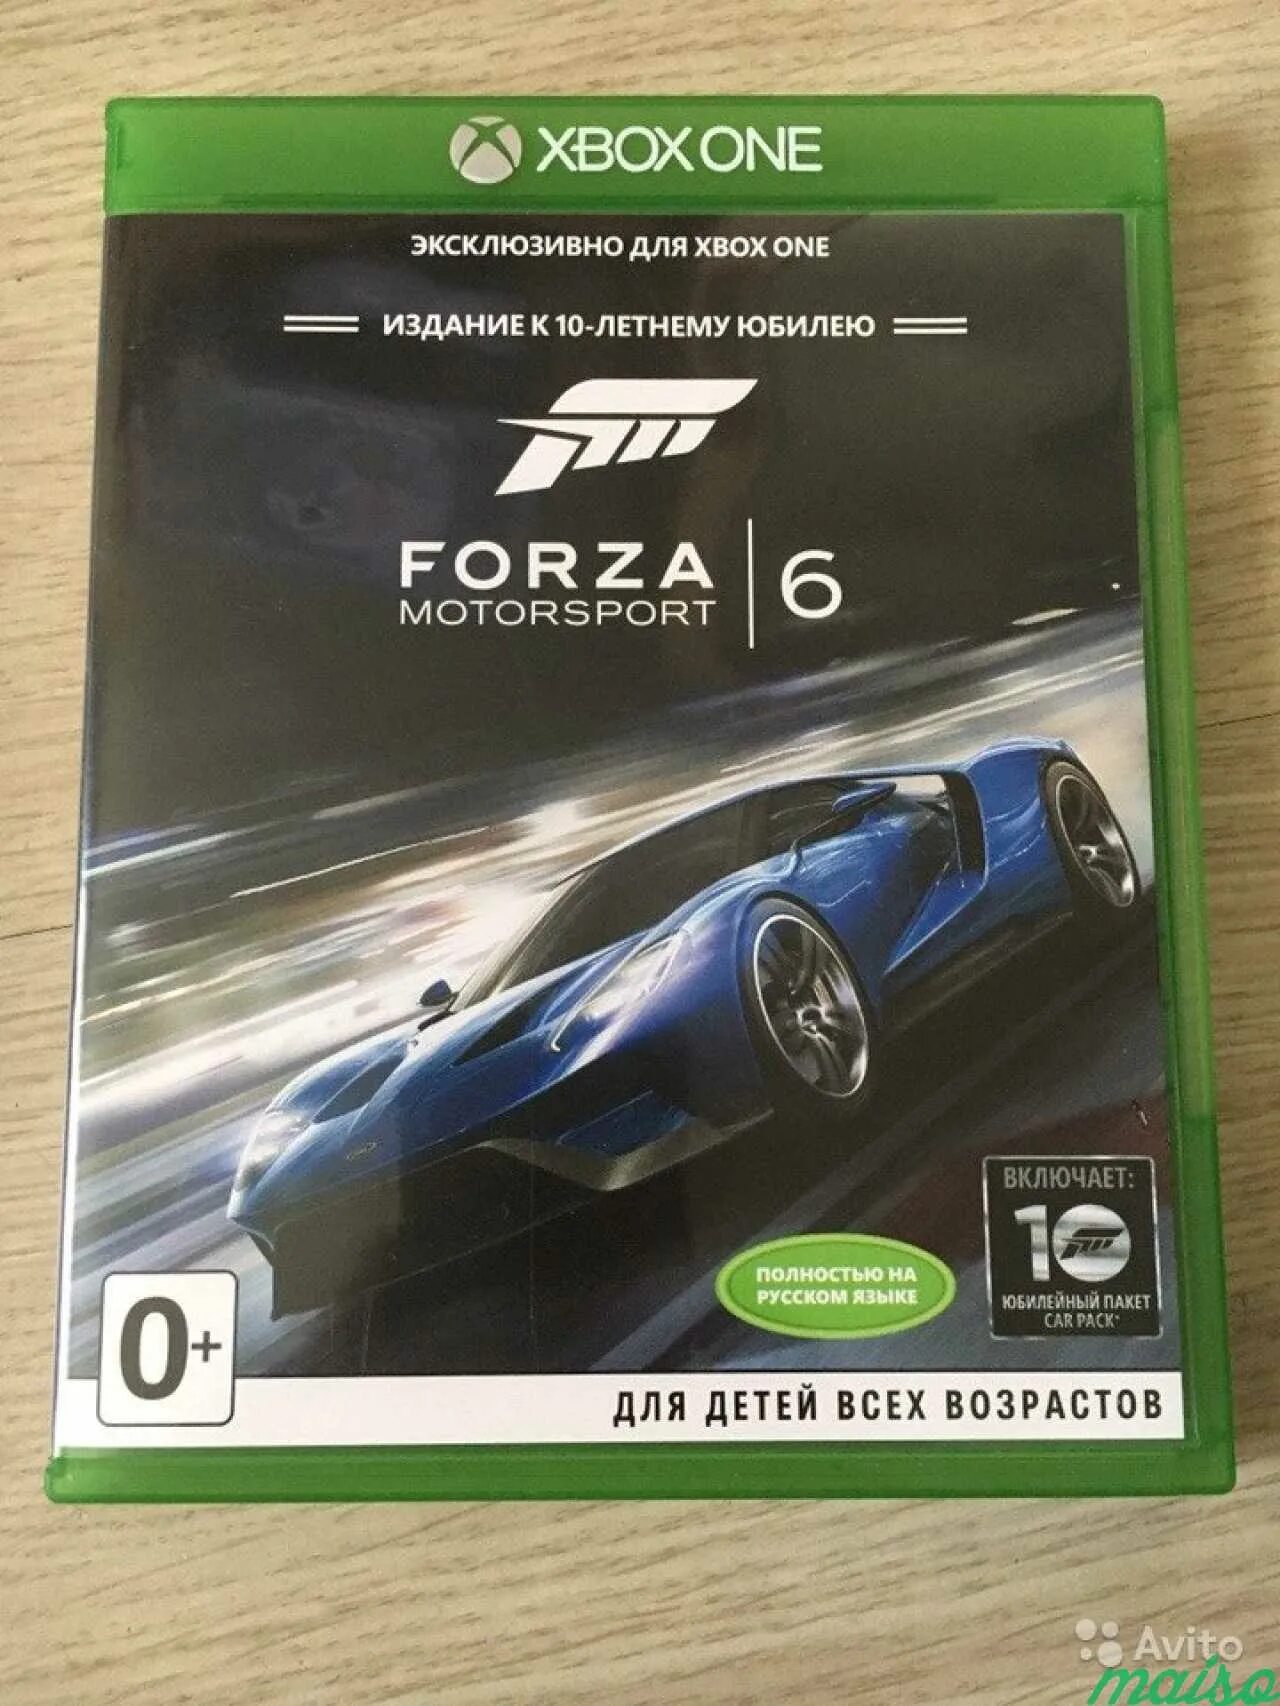 Форза хбокс. Forza Motorsport 6 Xbox one. Xbox one Forza Motorsport. Forza Motorsport 6 диск. Forza Motorsport Xbox.